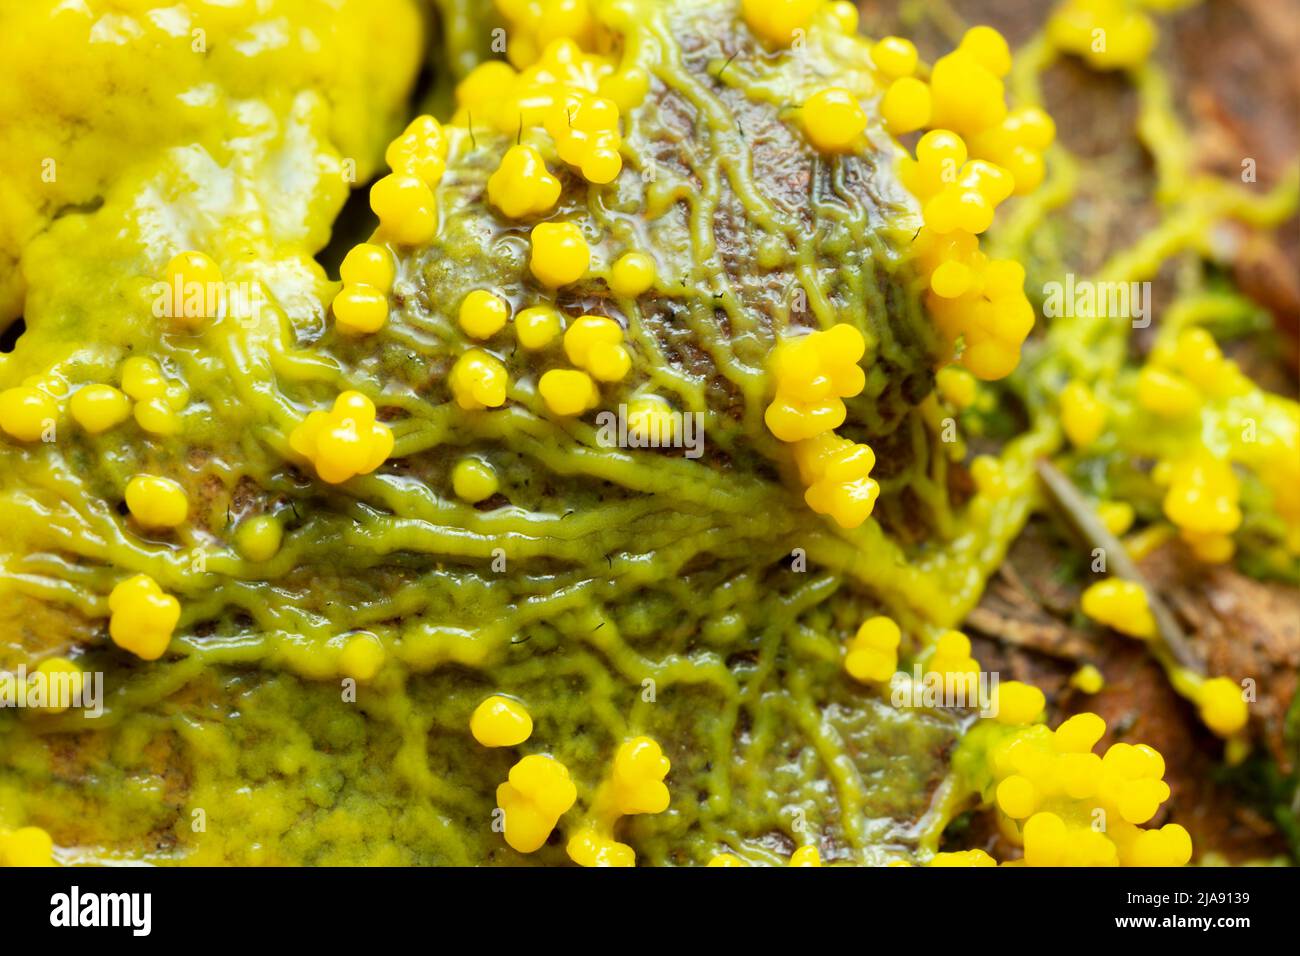 Slime mold, Myxomycota growing on leaf Stock Photo